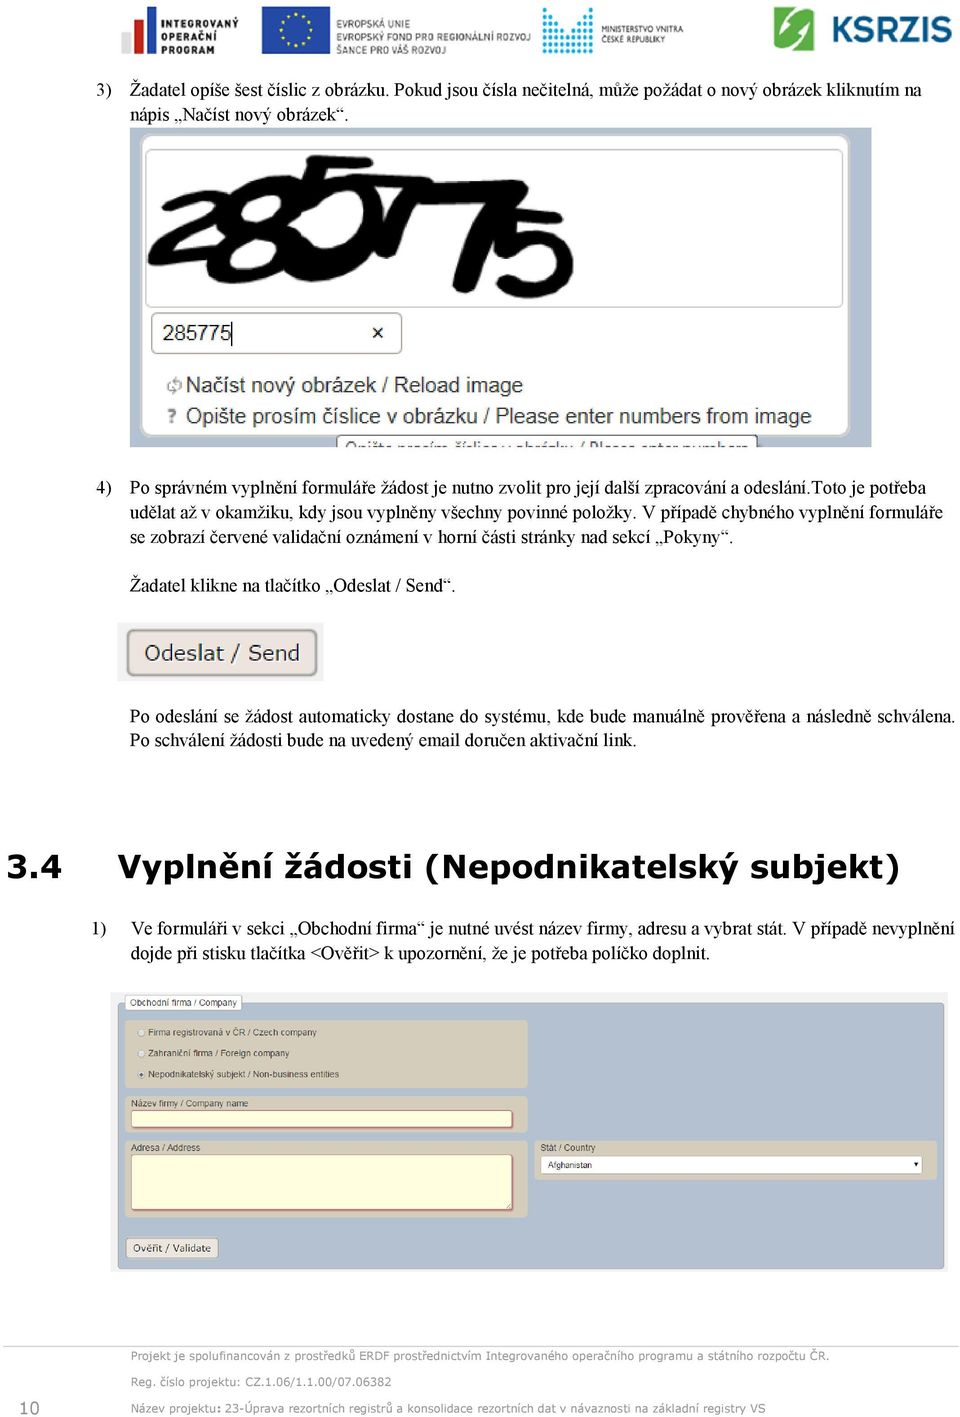 V případě chybného vyplnění formuláře se zobrazí červené validační oznámení v horní části stránky nad sekcí Pokyny. Žadatel klikne na tlačítko Odeslat / Send.